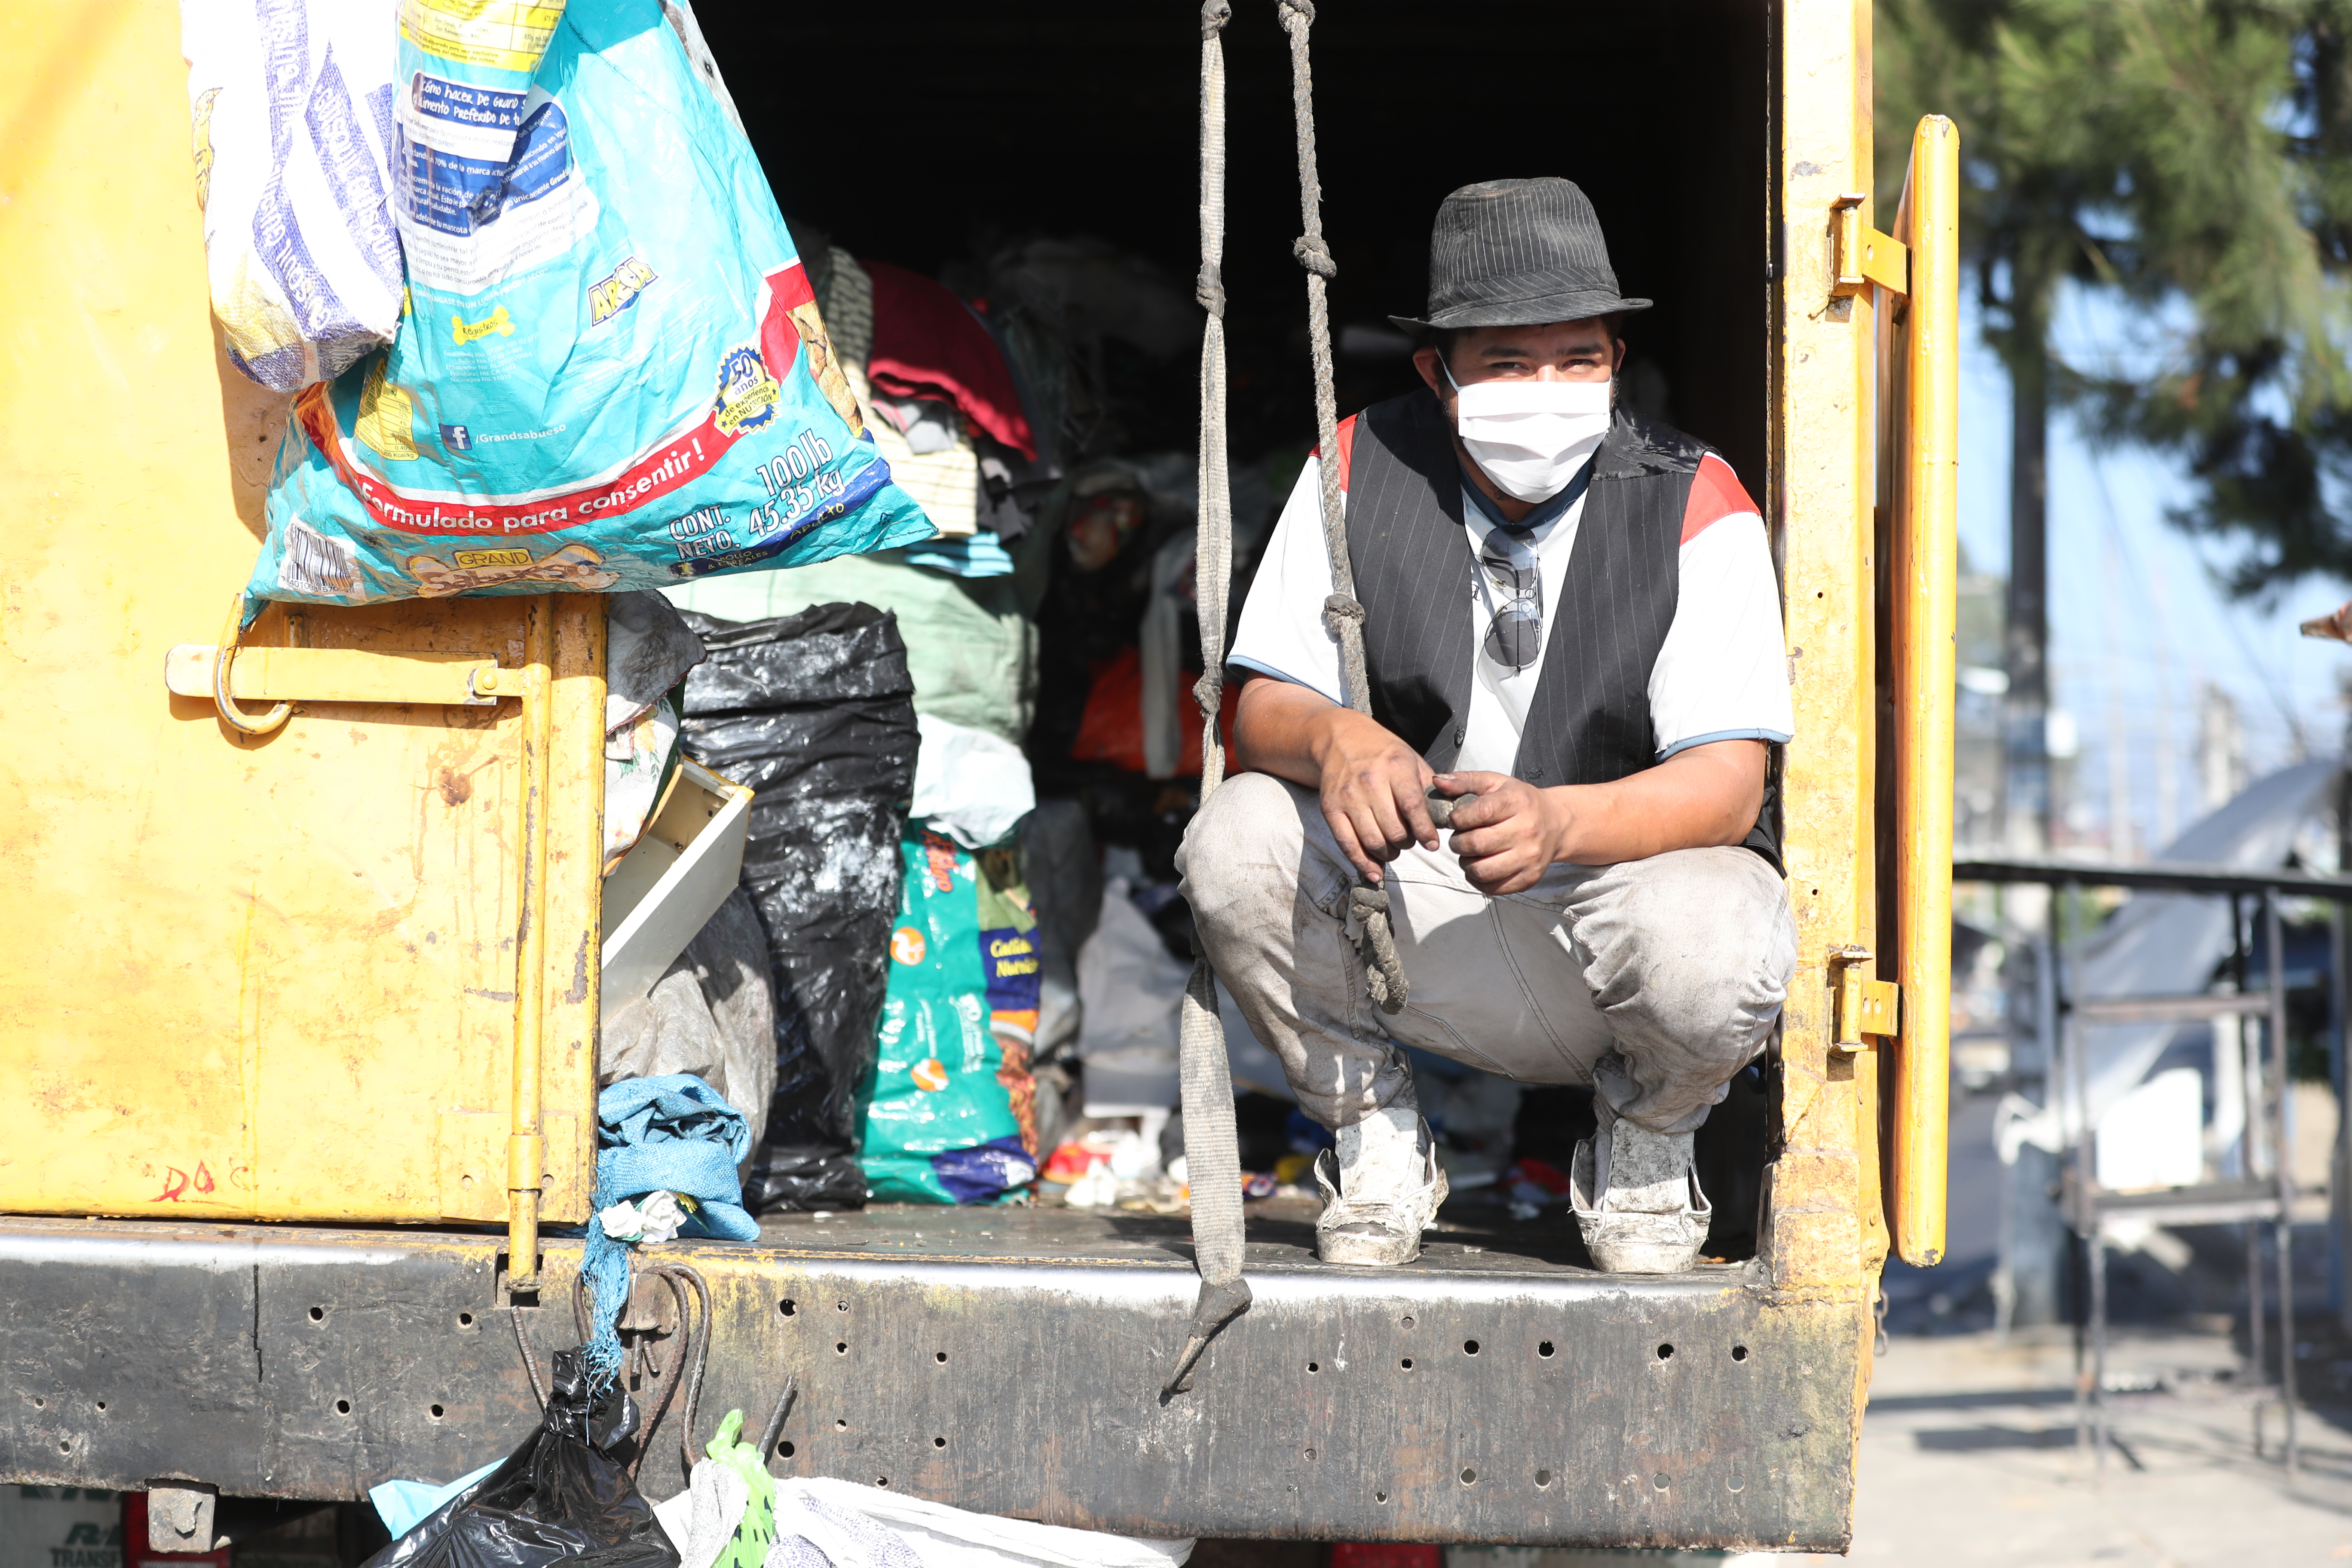 En el camión en el que trabaja como recolector de basura, Victor Hernandez, atendió a Prensa Libre, mientras estaba en la colonia Primero de Julio, zona 5 de Mixco. (Foto Prensa Libre: Érick Ávila)